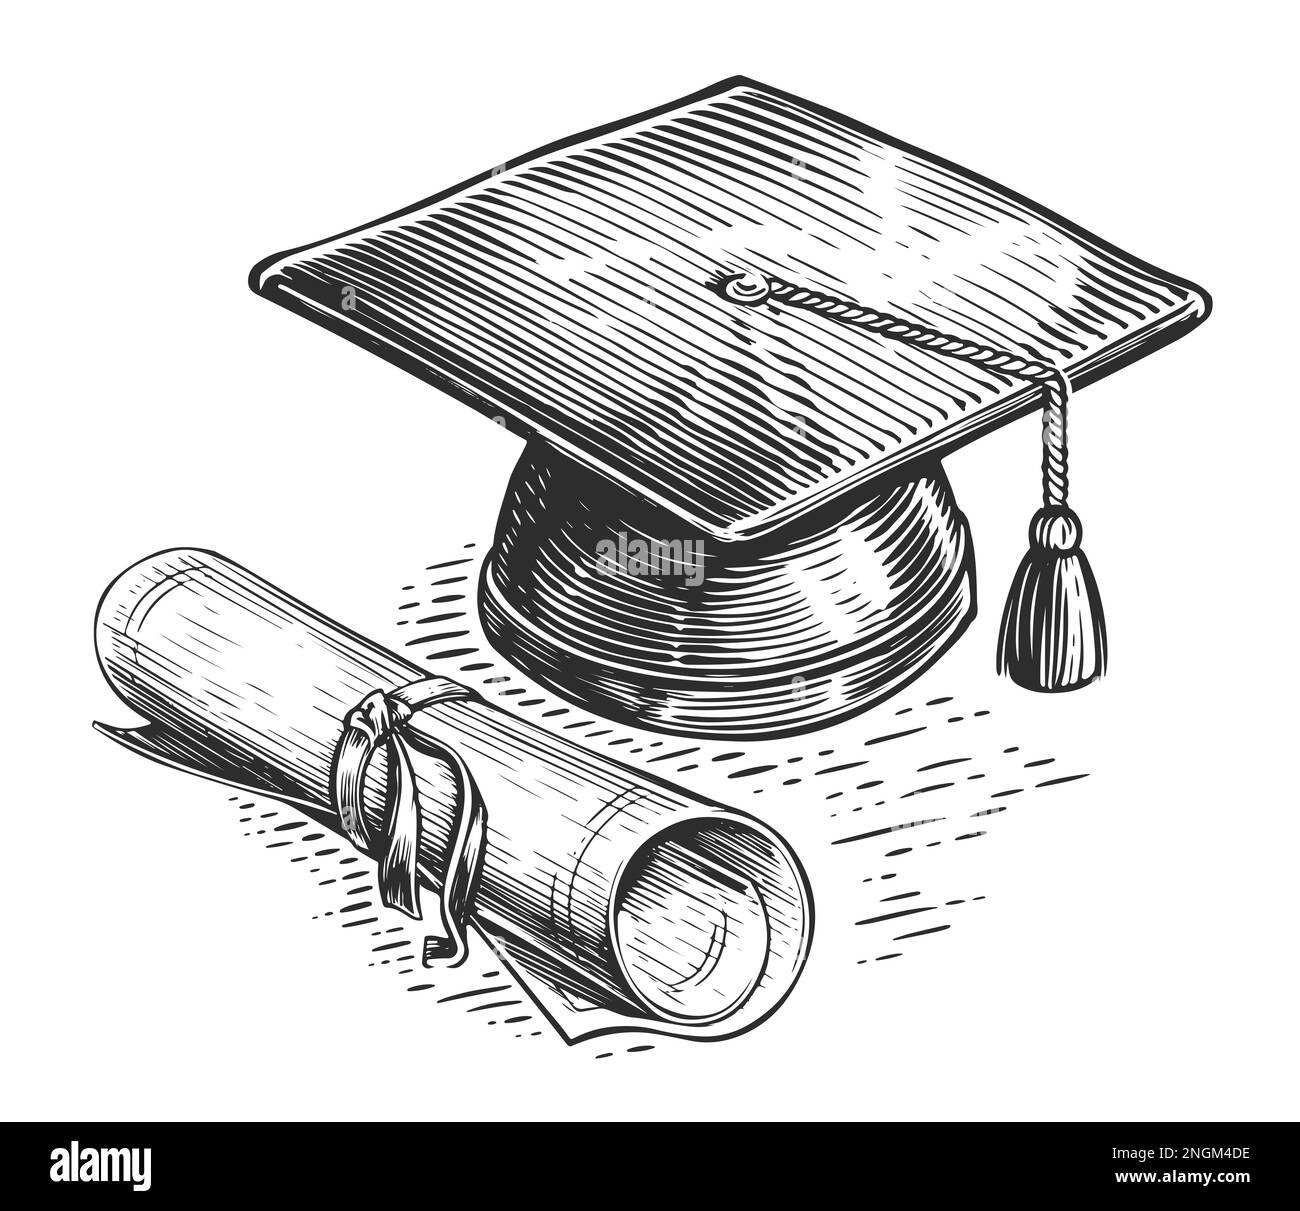 Tappo di laurea e diploma in stile schizzo. Laurea accademica, concetto di istruzione. Illustrazione vintage Foto Stock